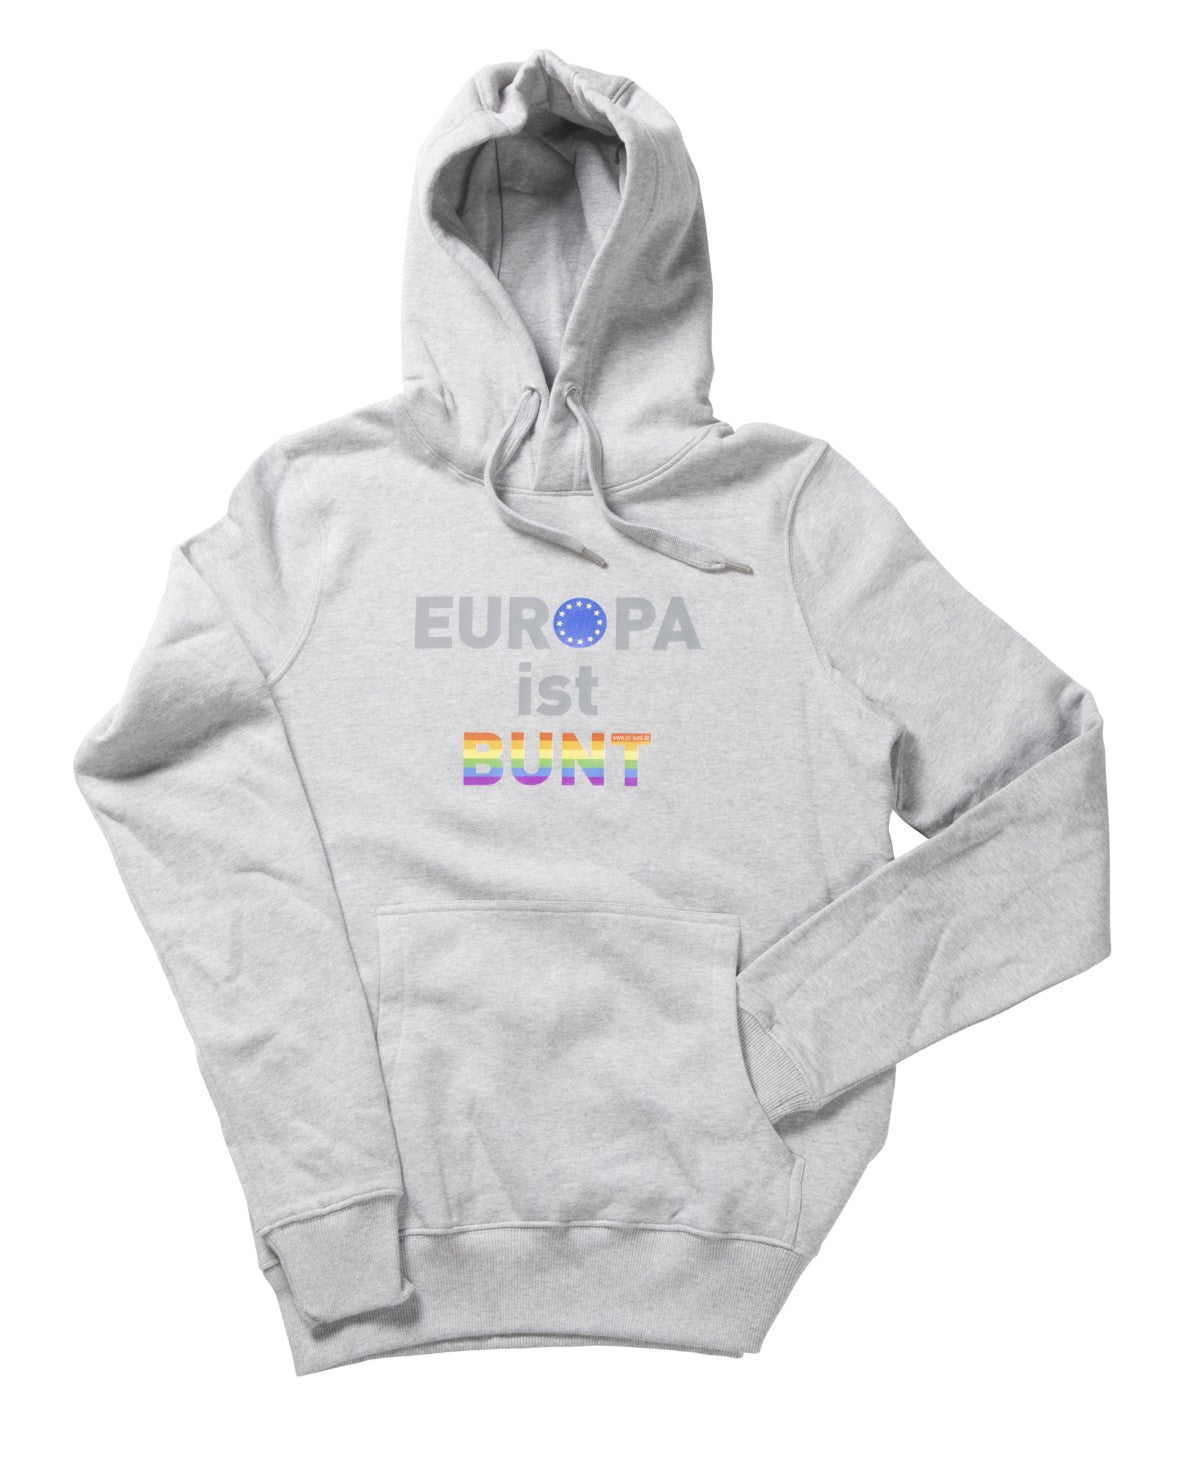 Europa ist Bunt - Hoodie